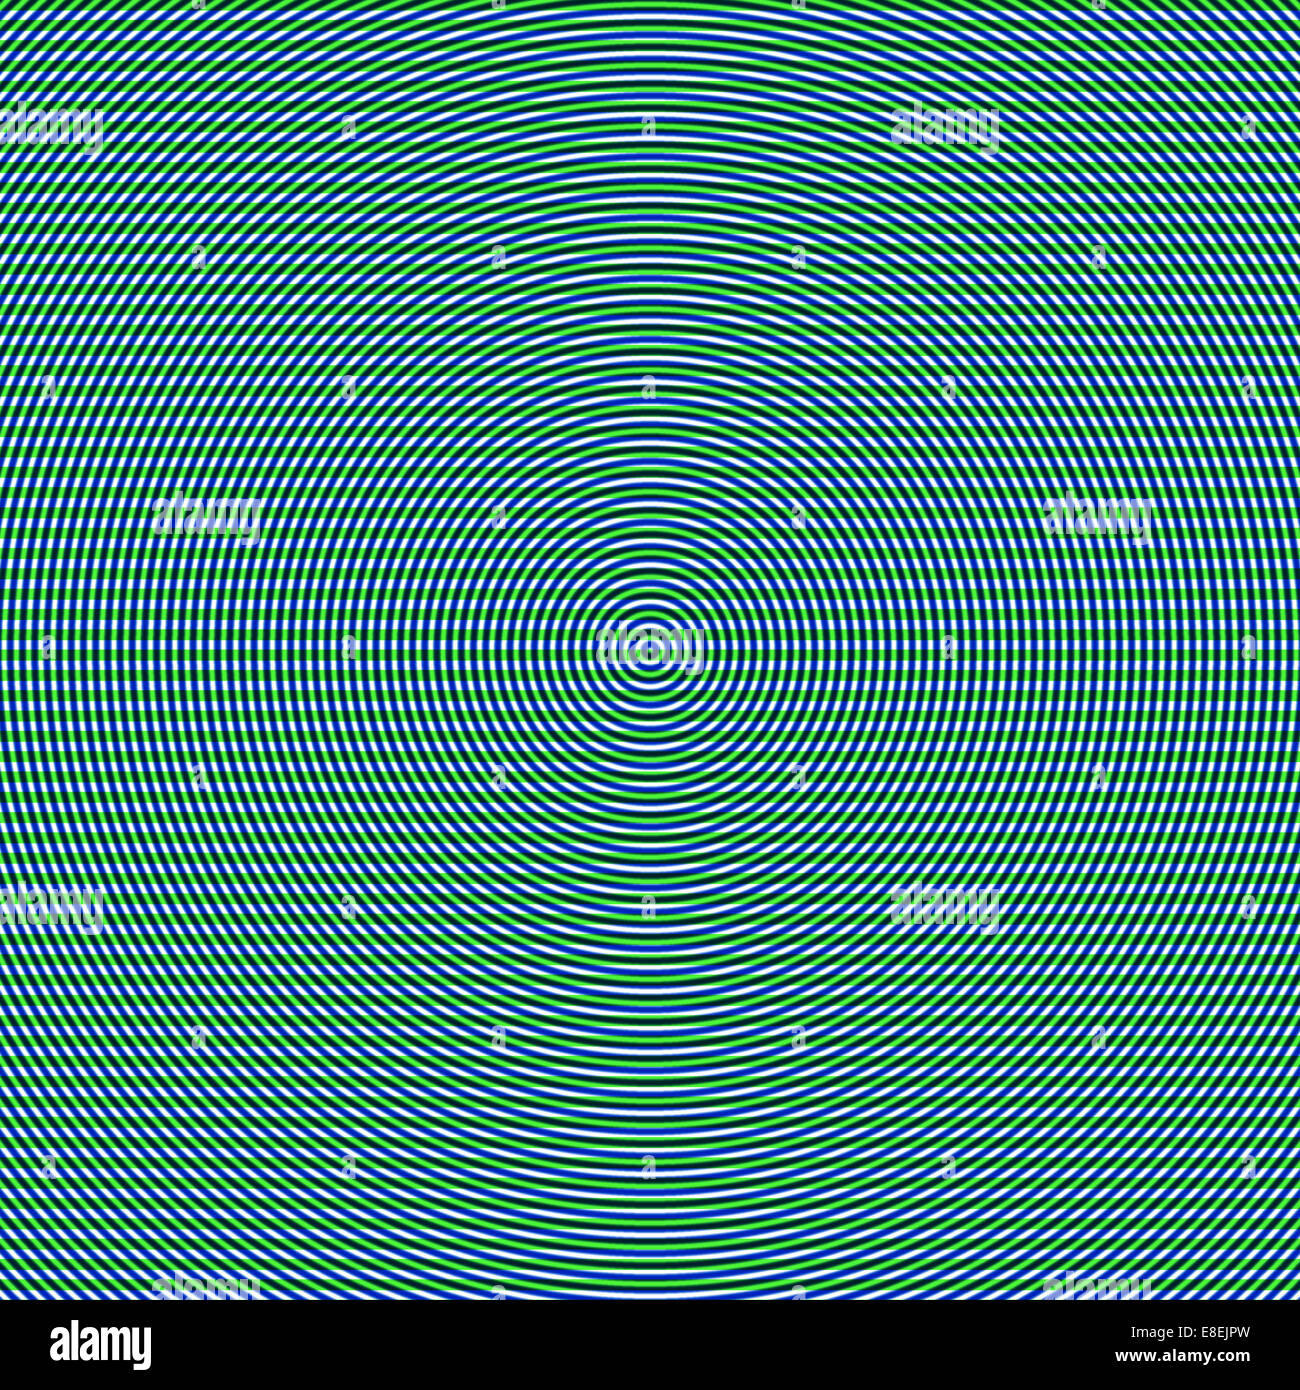 Blauer Kreis-Muster in grün und weiß gesäumt Hintergrund, eine abstrakte Illusion hypnotisieren Stockfoto